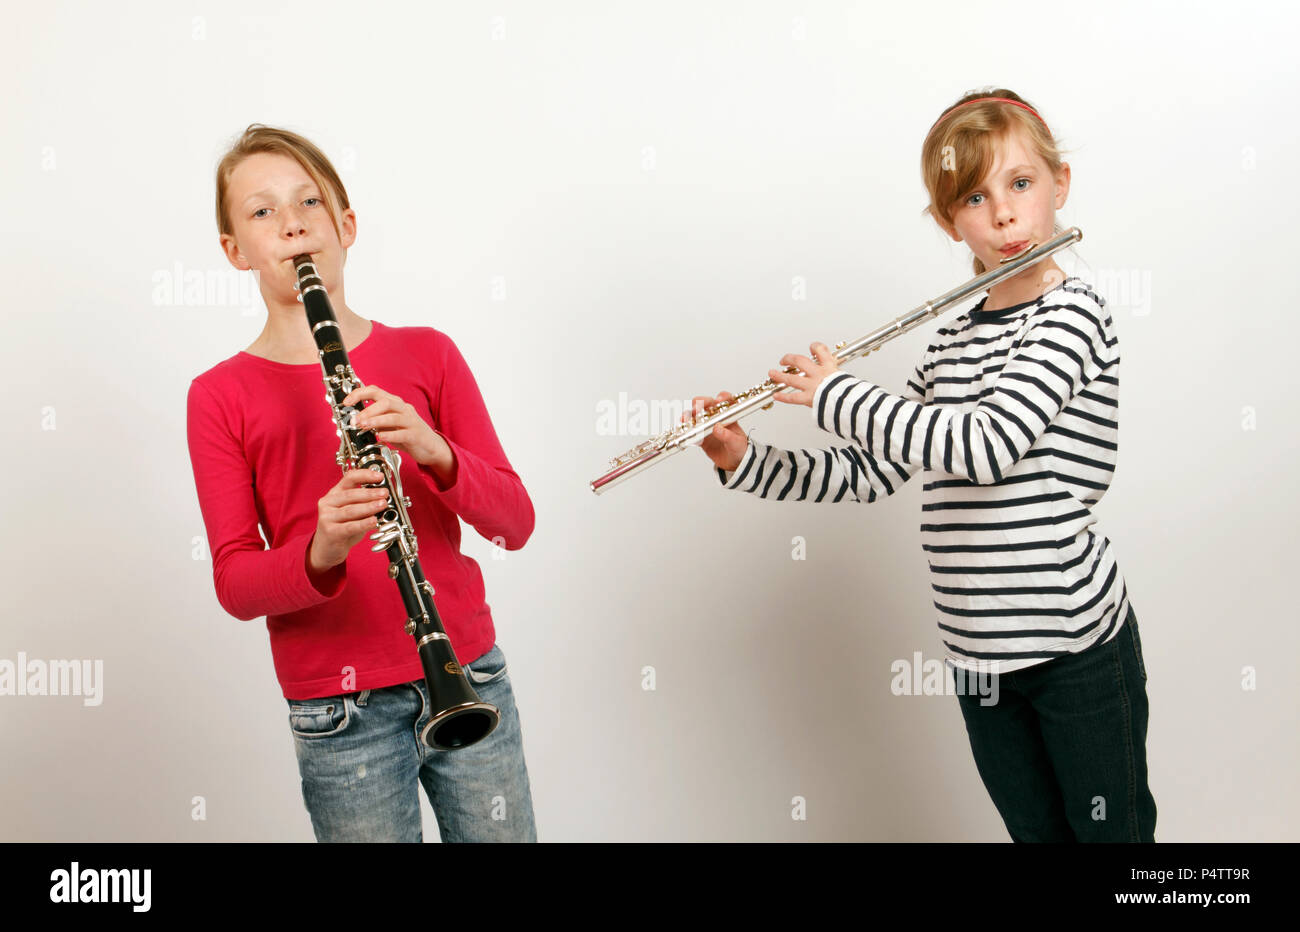 Deux jeunes filles, jouant sur un duo flûte et clarinette Photo Stock -  Alamy